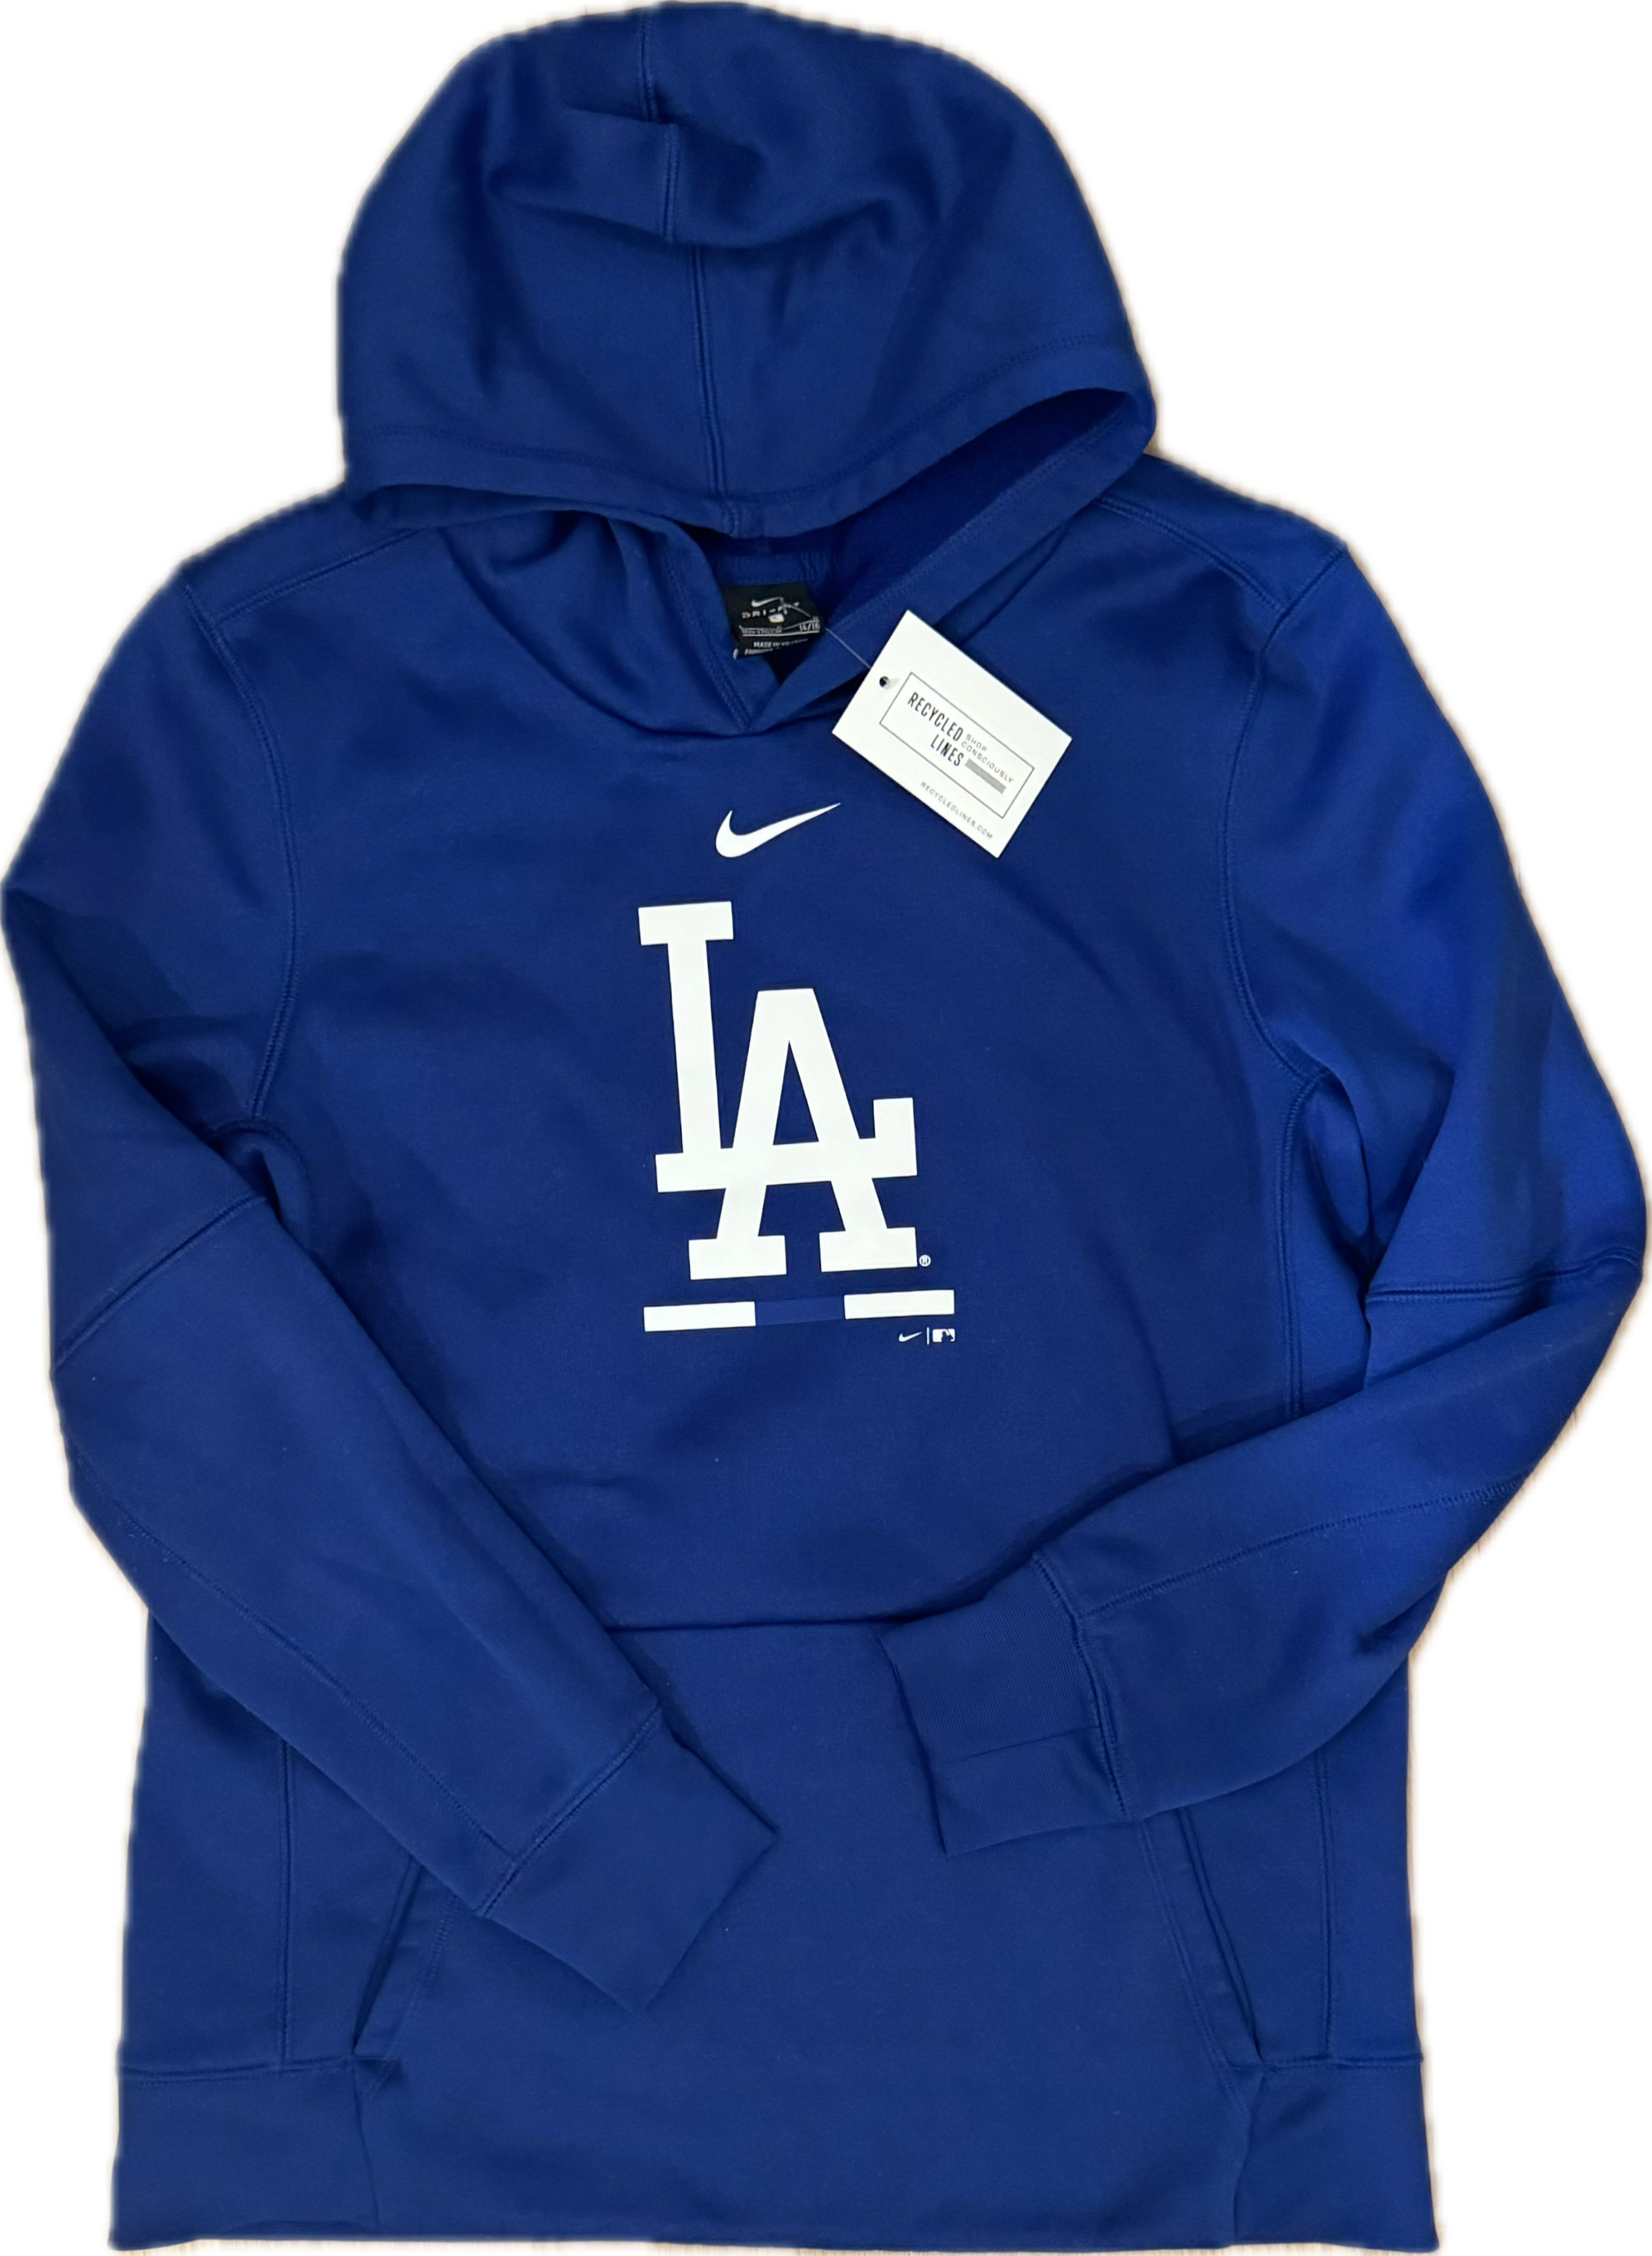 Nike LA Dodgers Hooded Sweatshirt, Blue Boys Size L